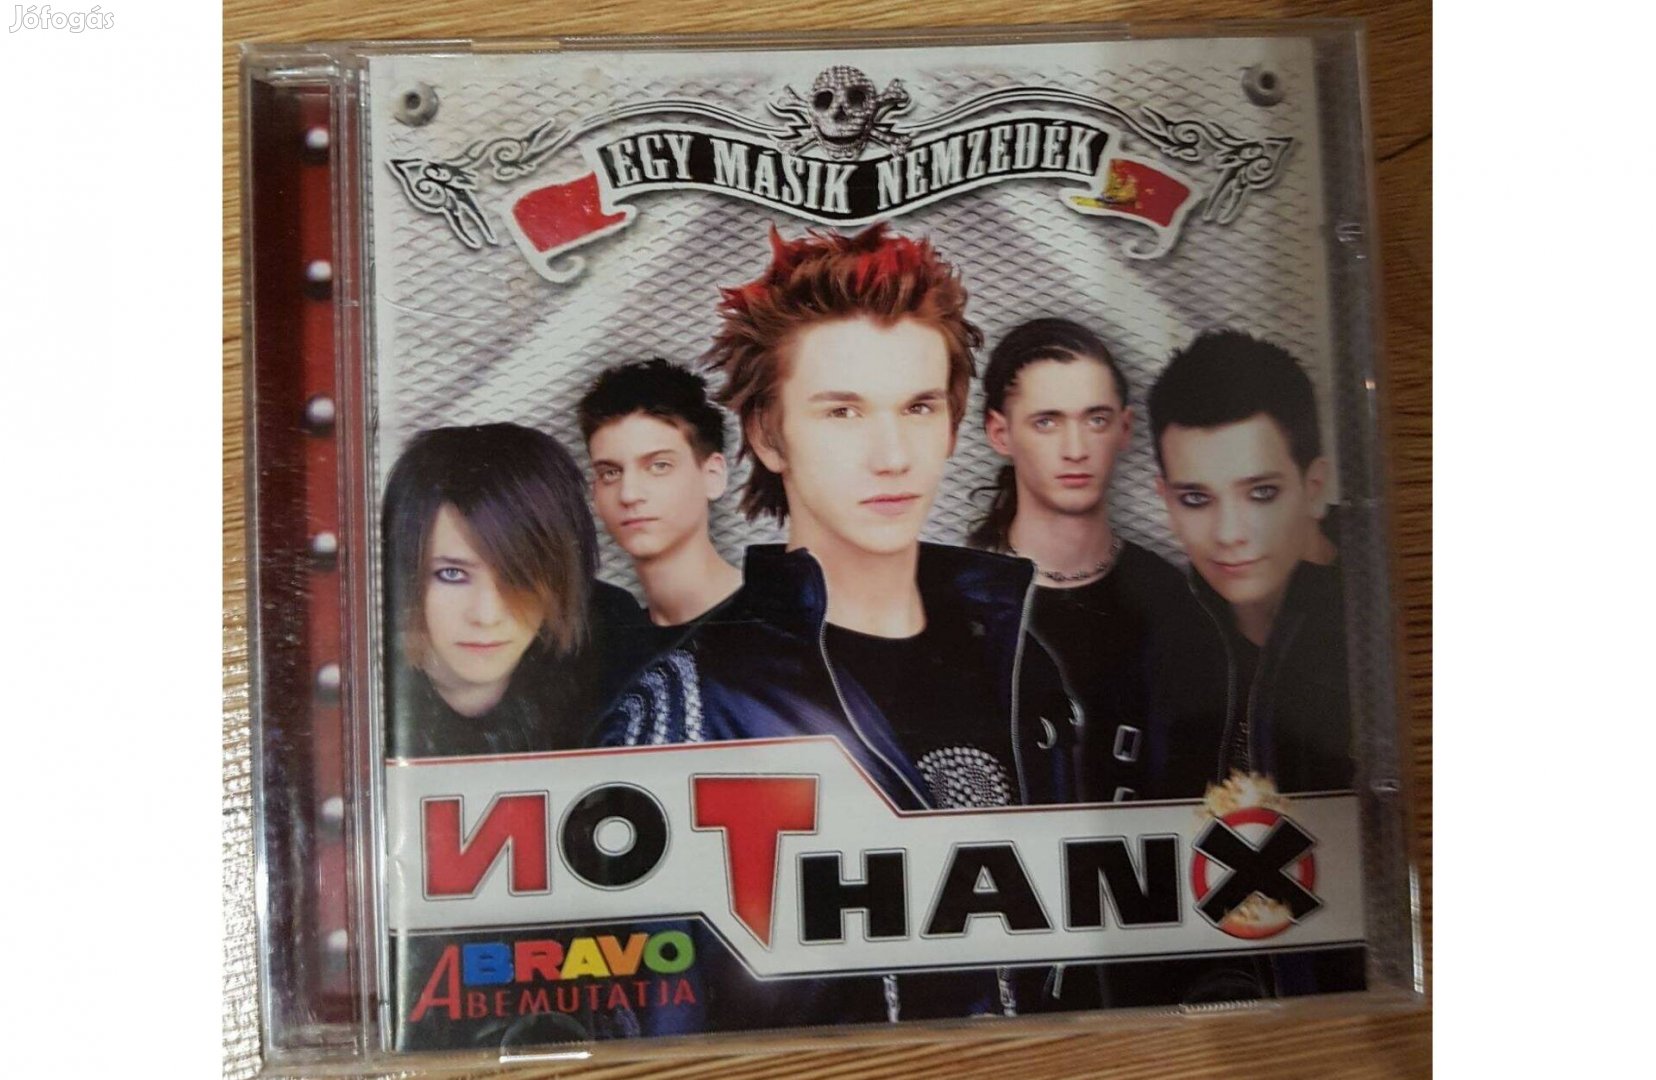 No Thanx - Egy Másik Nemzedék CD